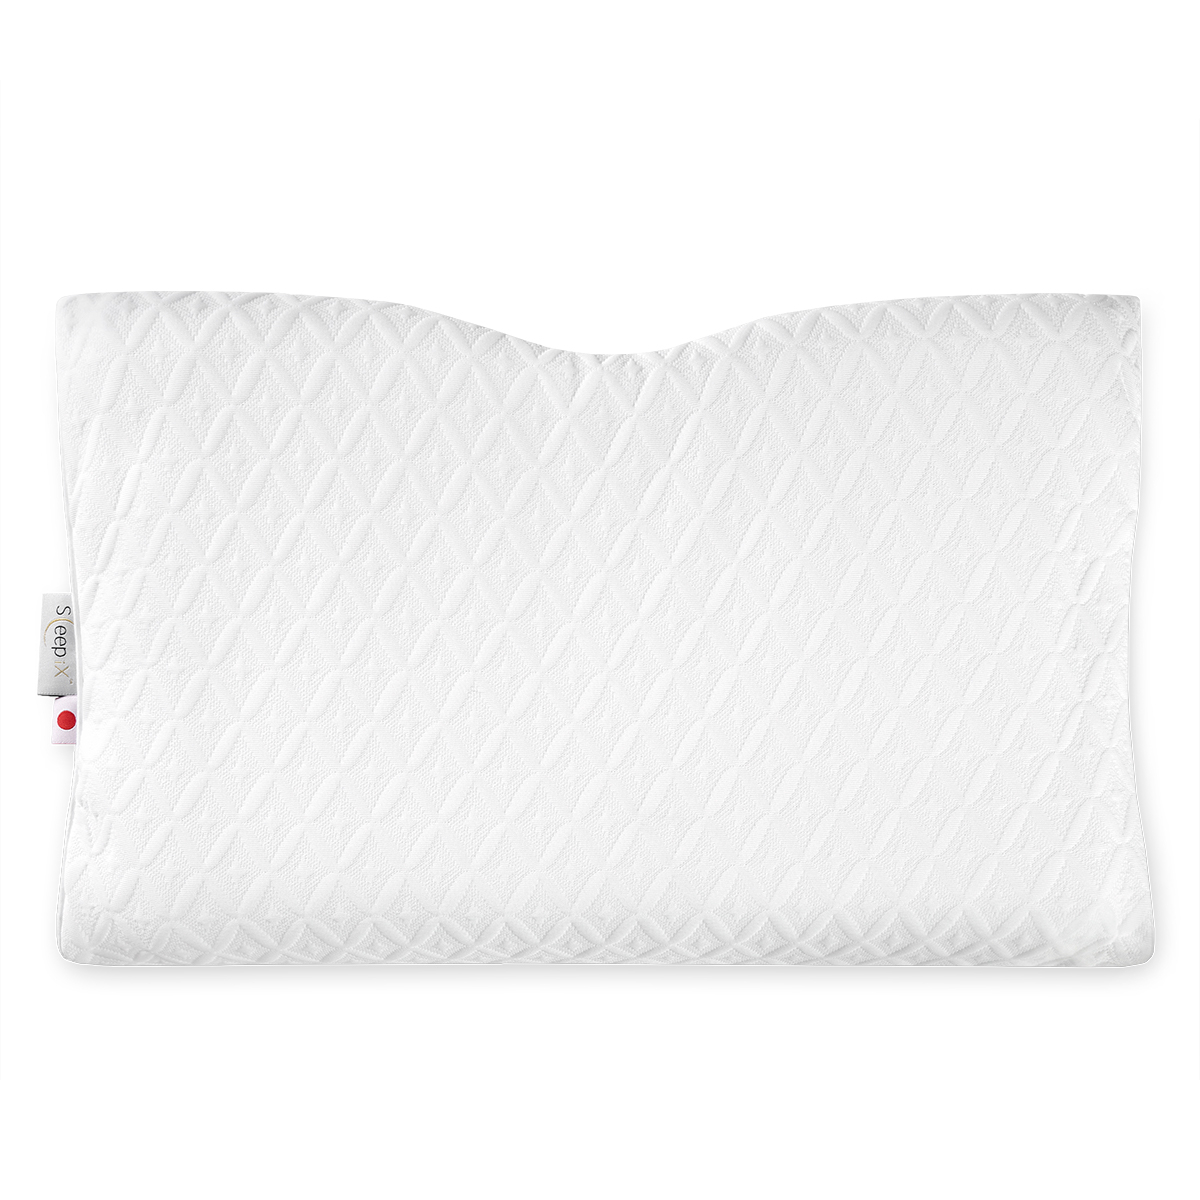 Анатомическая подушка Sleepix Нарита белая 54х32х6/10 см, цвет белый - фото 2